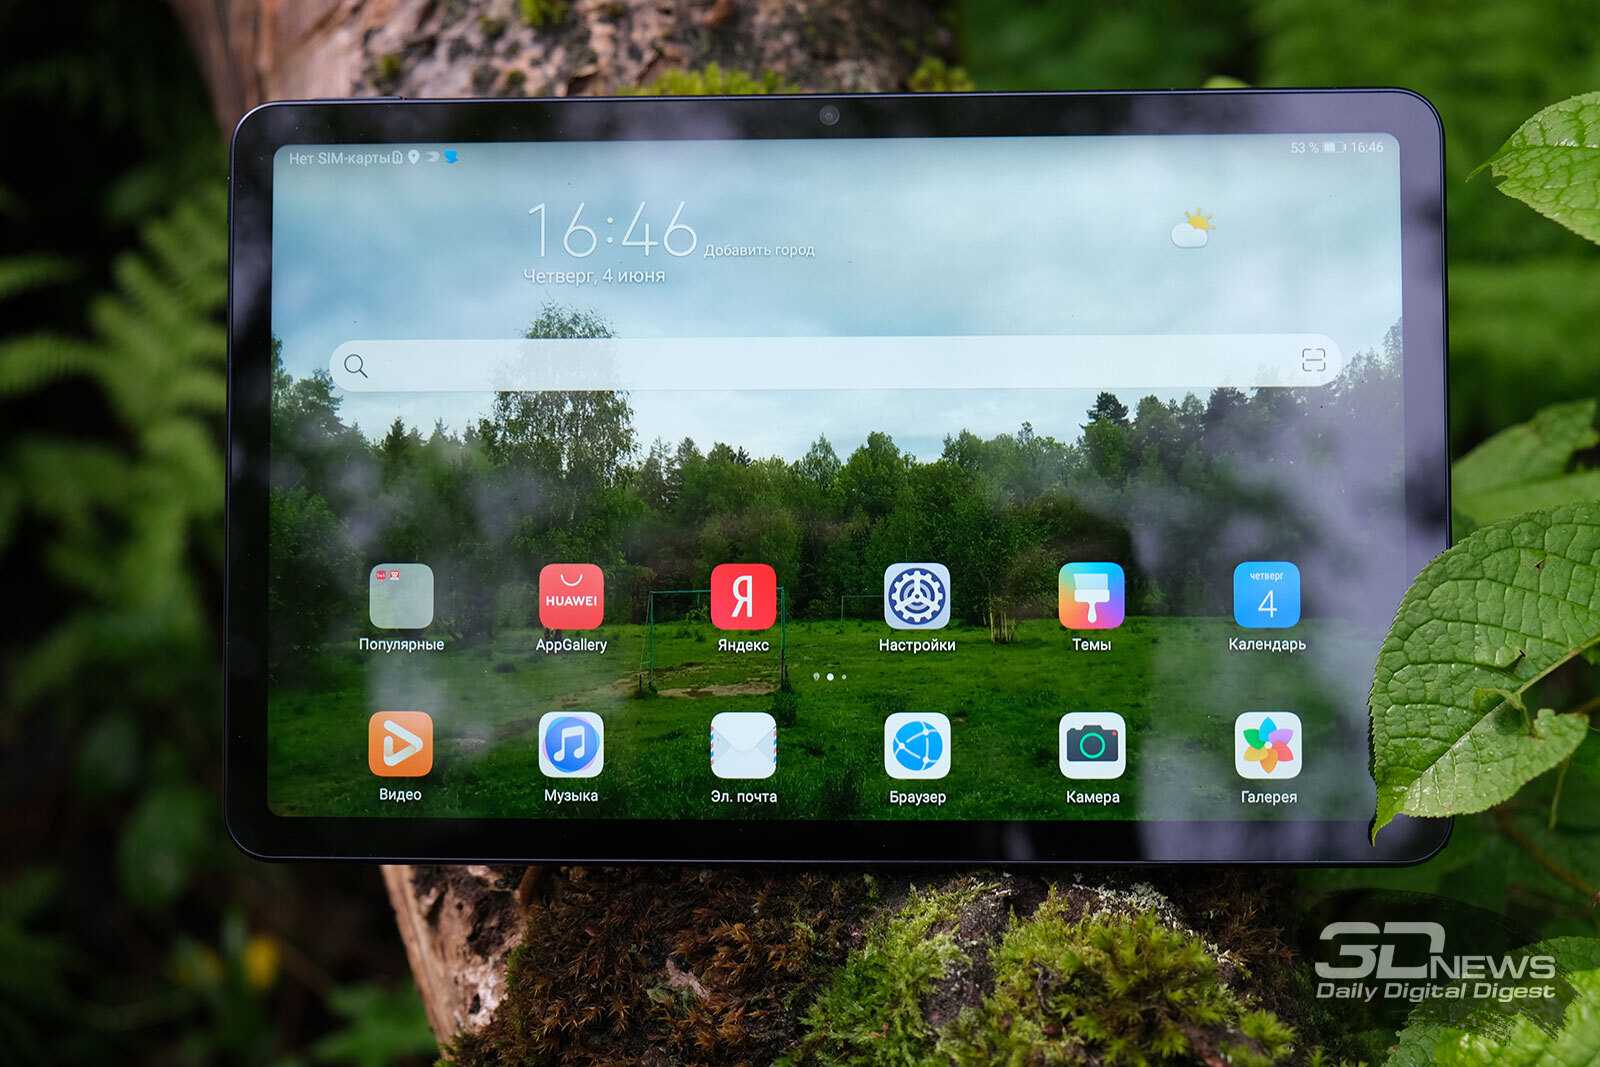 Компания Huawei сообщила о старте продаже на территории Европы двух новых планшетов бюджетного сегмента включая MatePad T10 а также MatePad T10s Новые гаджеты будут